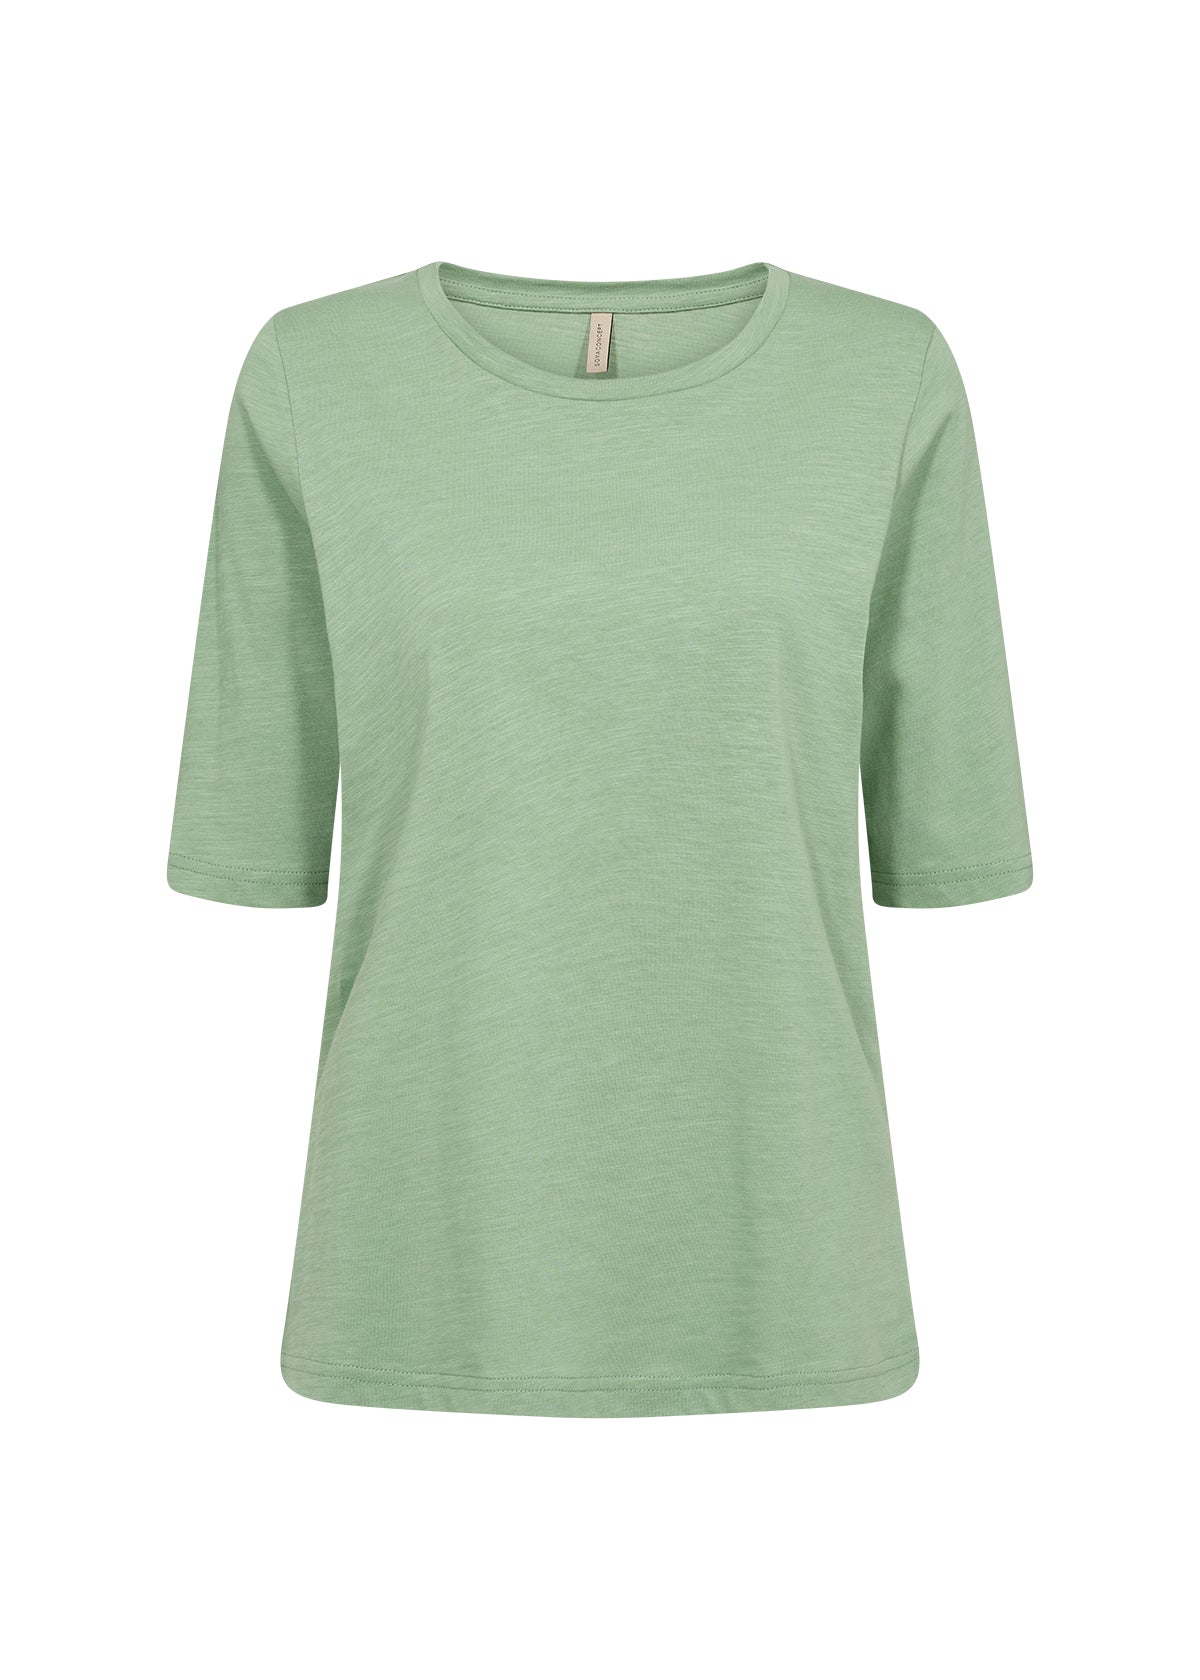 Soya Concept Babette Green T-Shirt